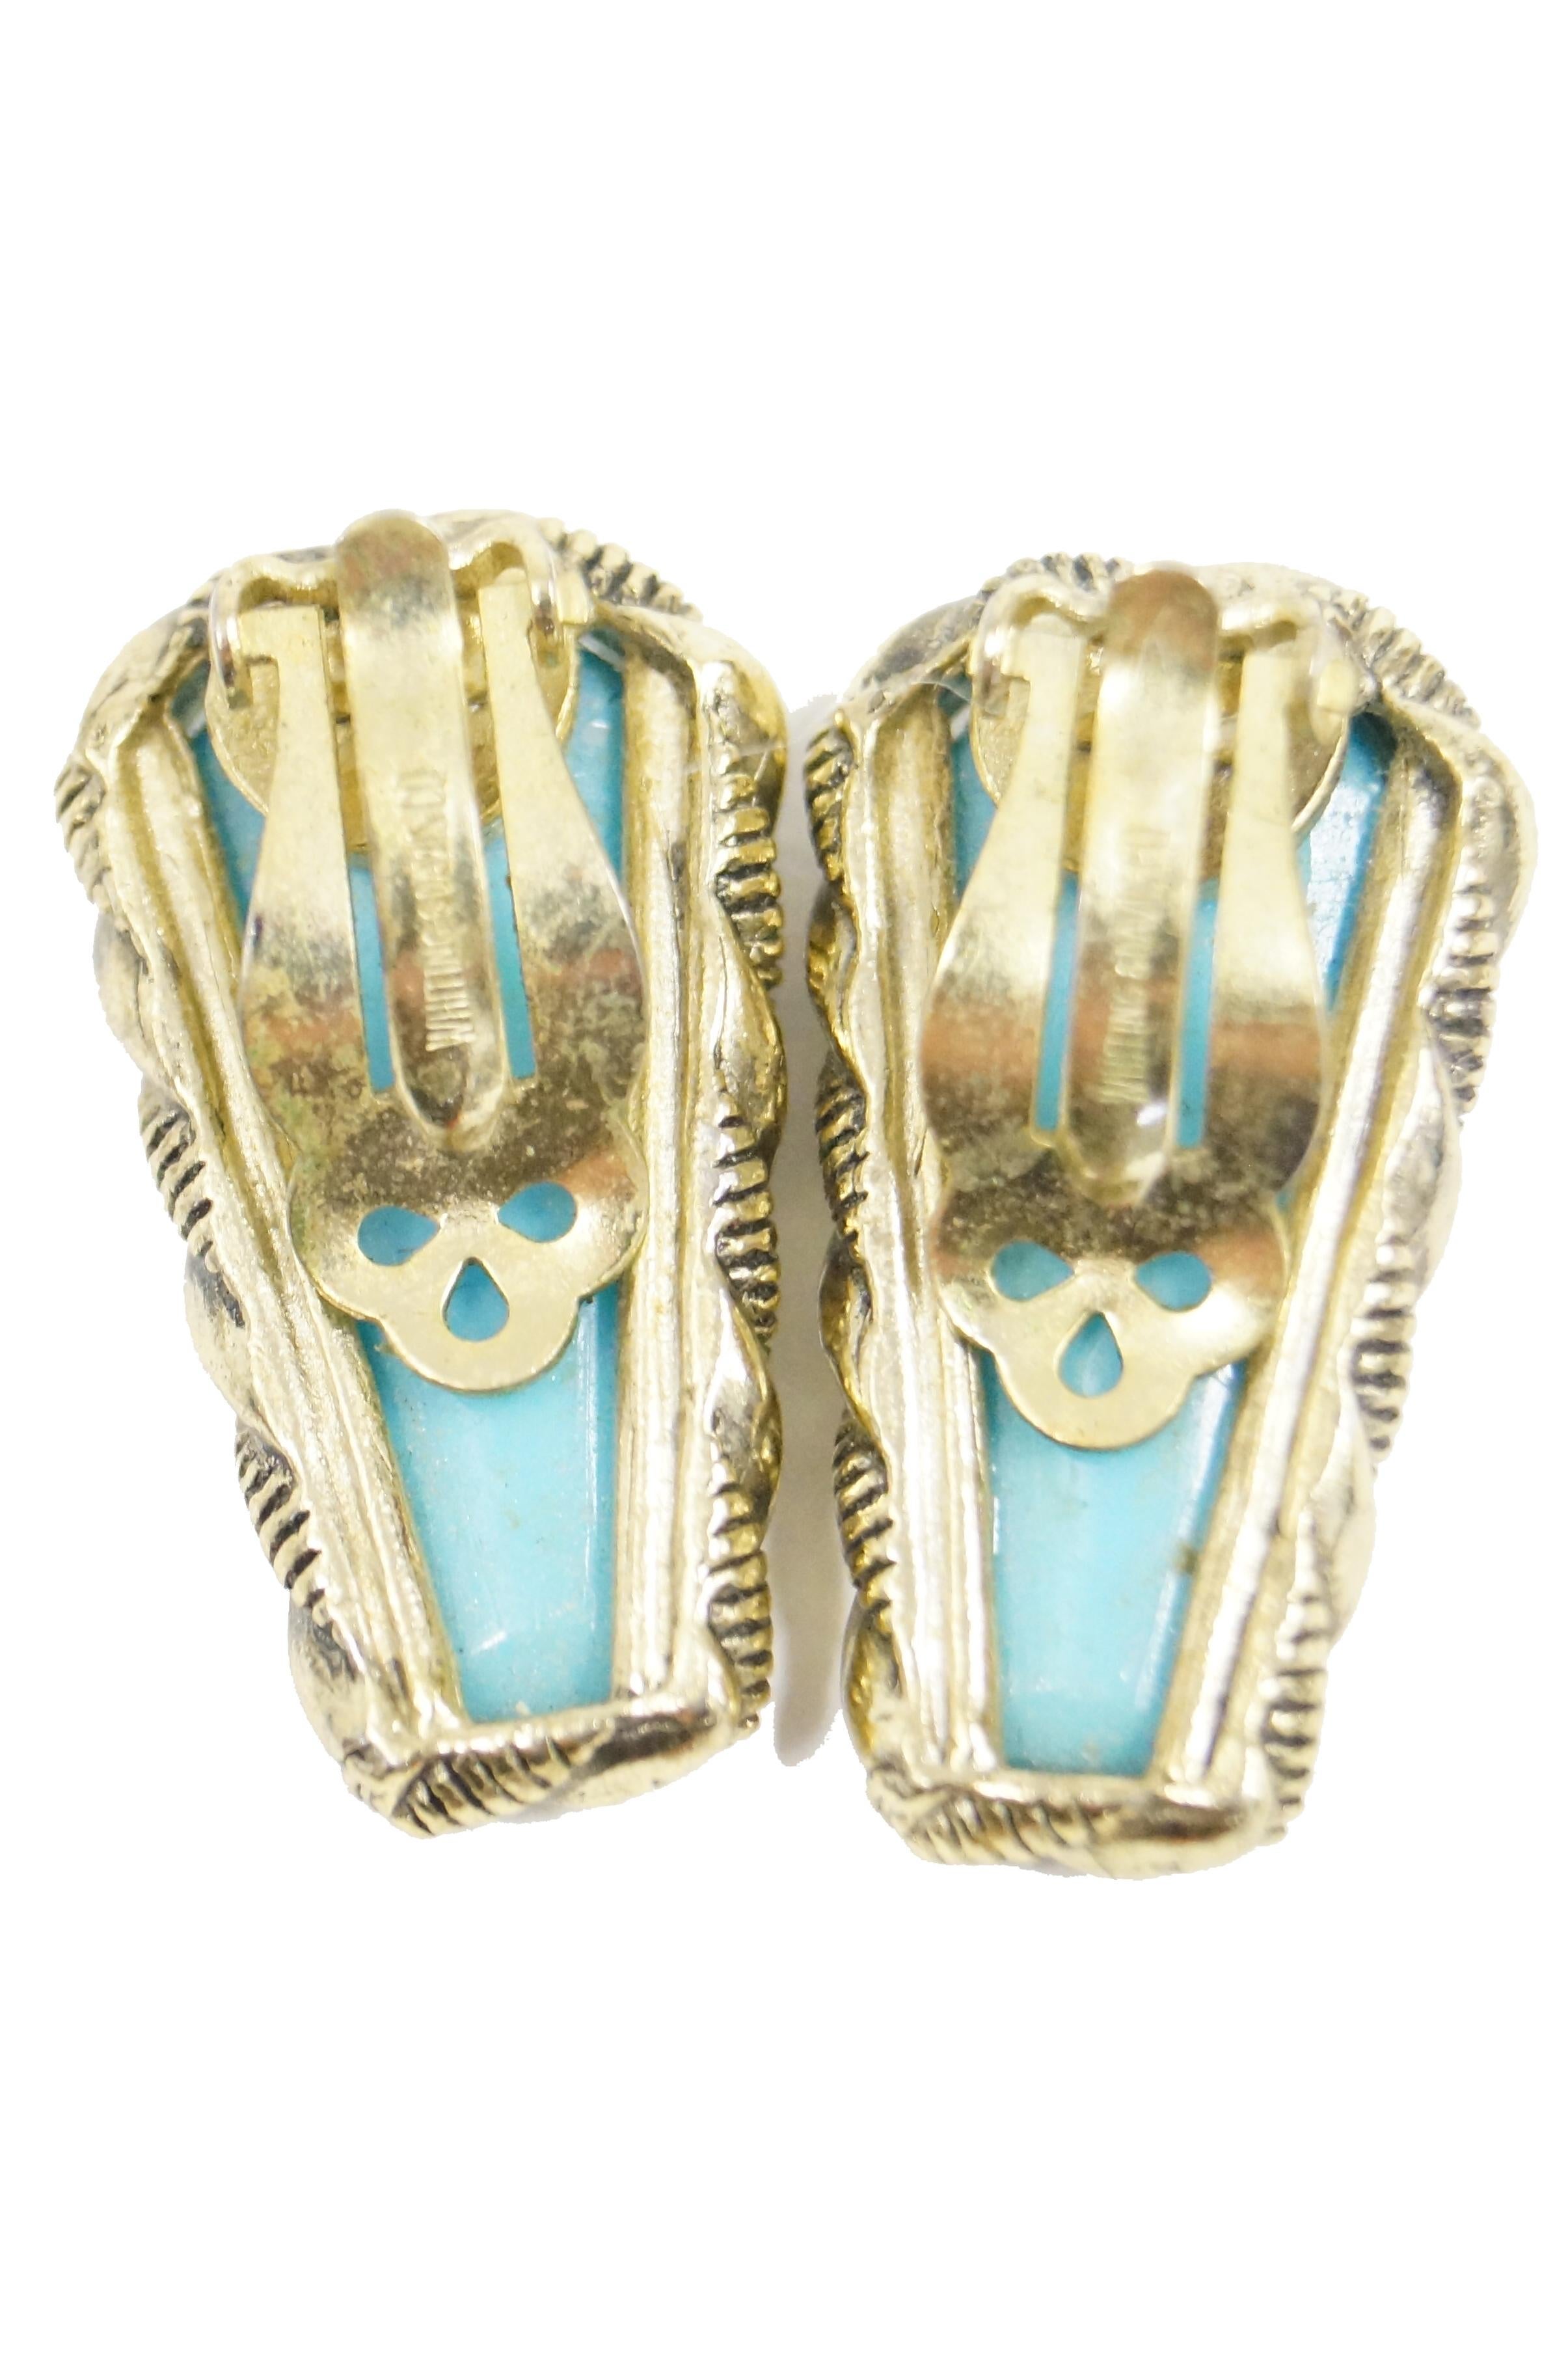 1970s Whiting & Davis Egyptian Revival Pharaoh Bracelet and Earrings For Sale 5